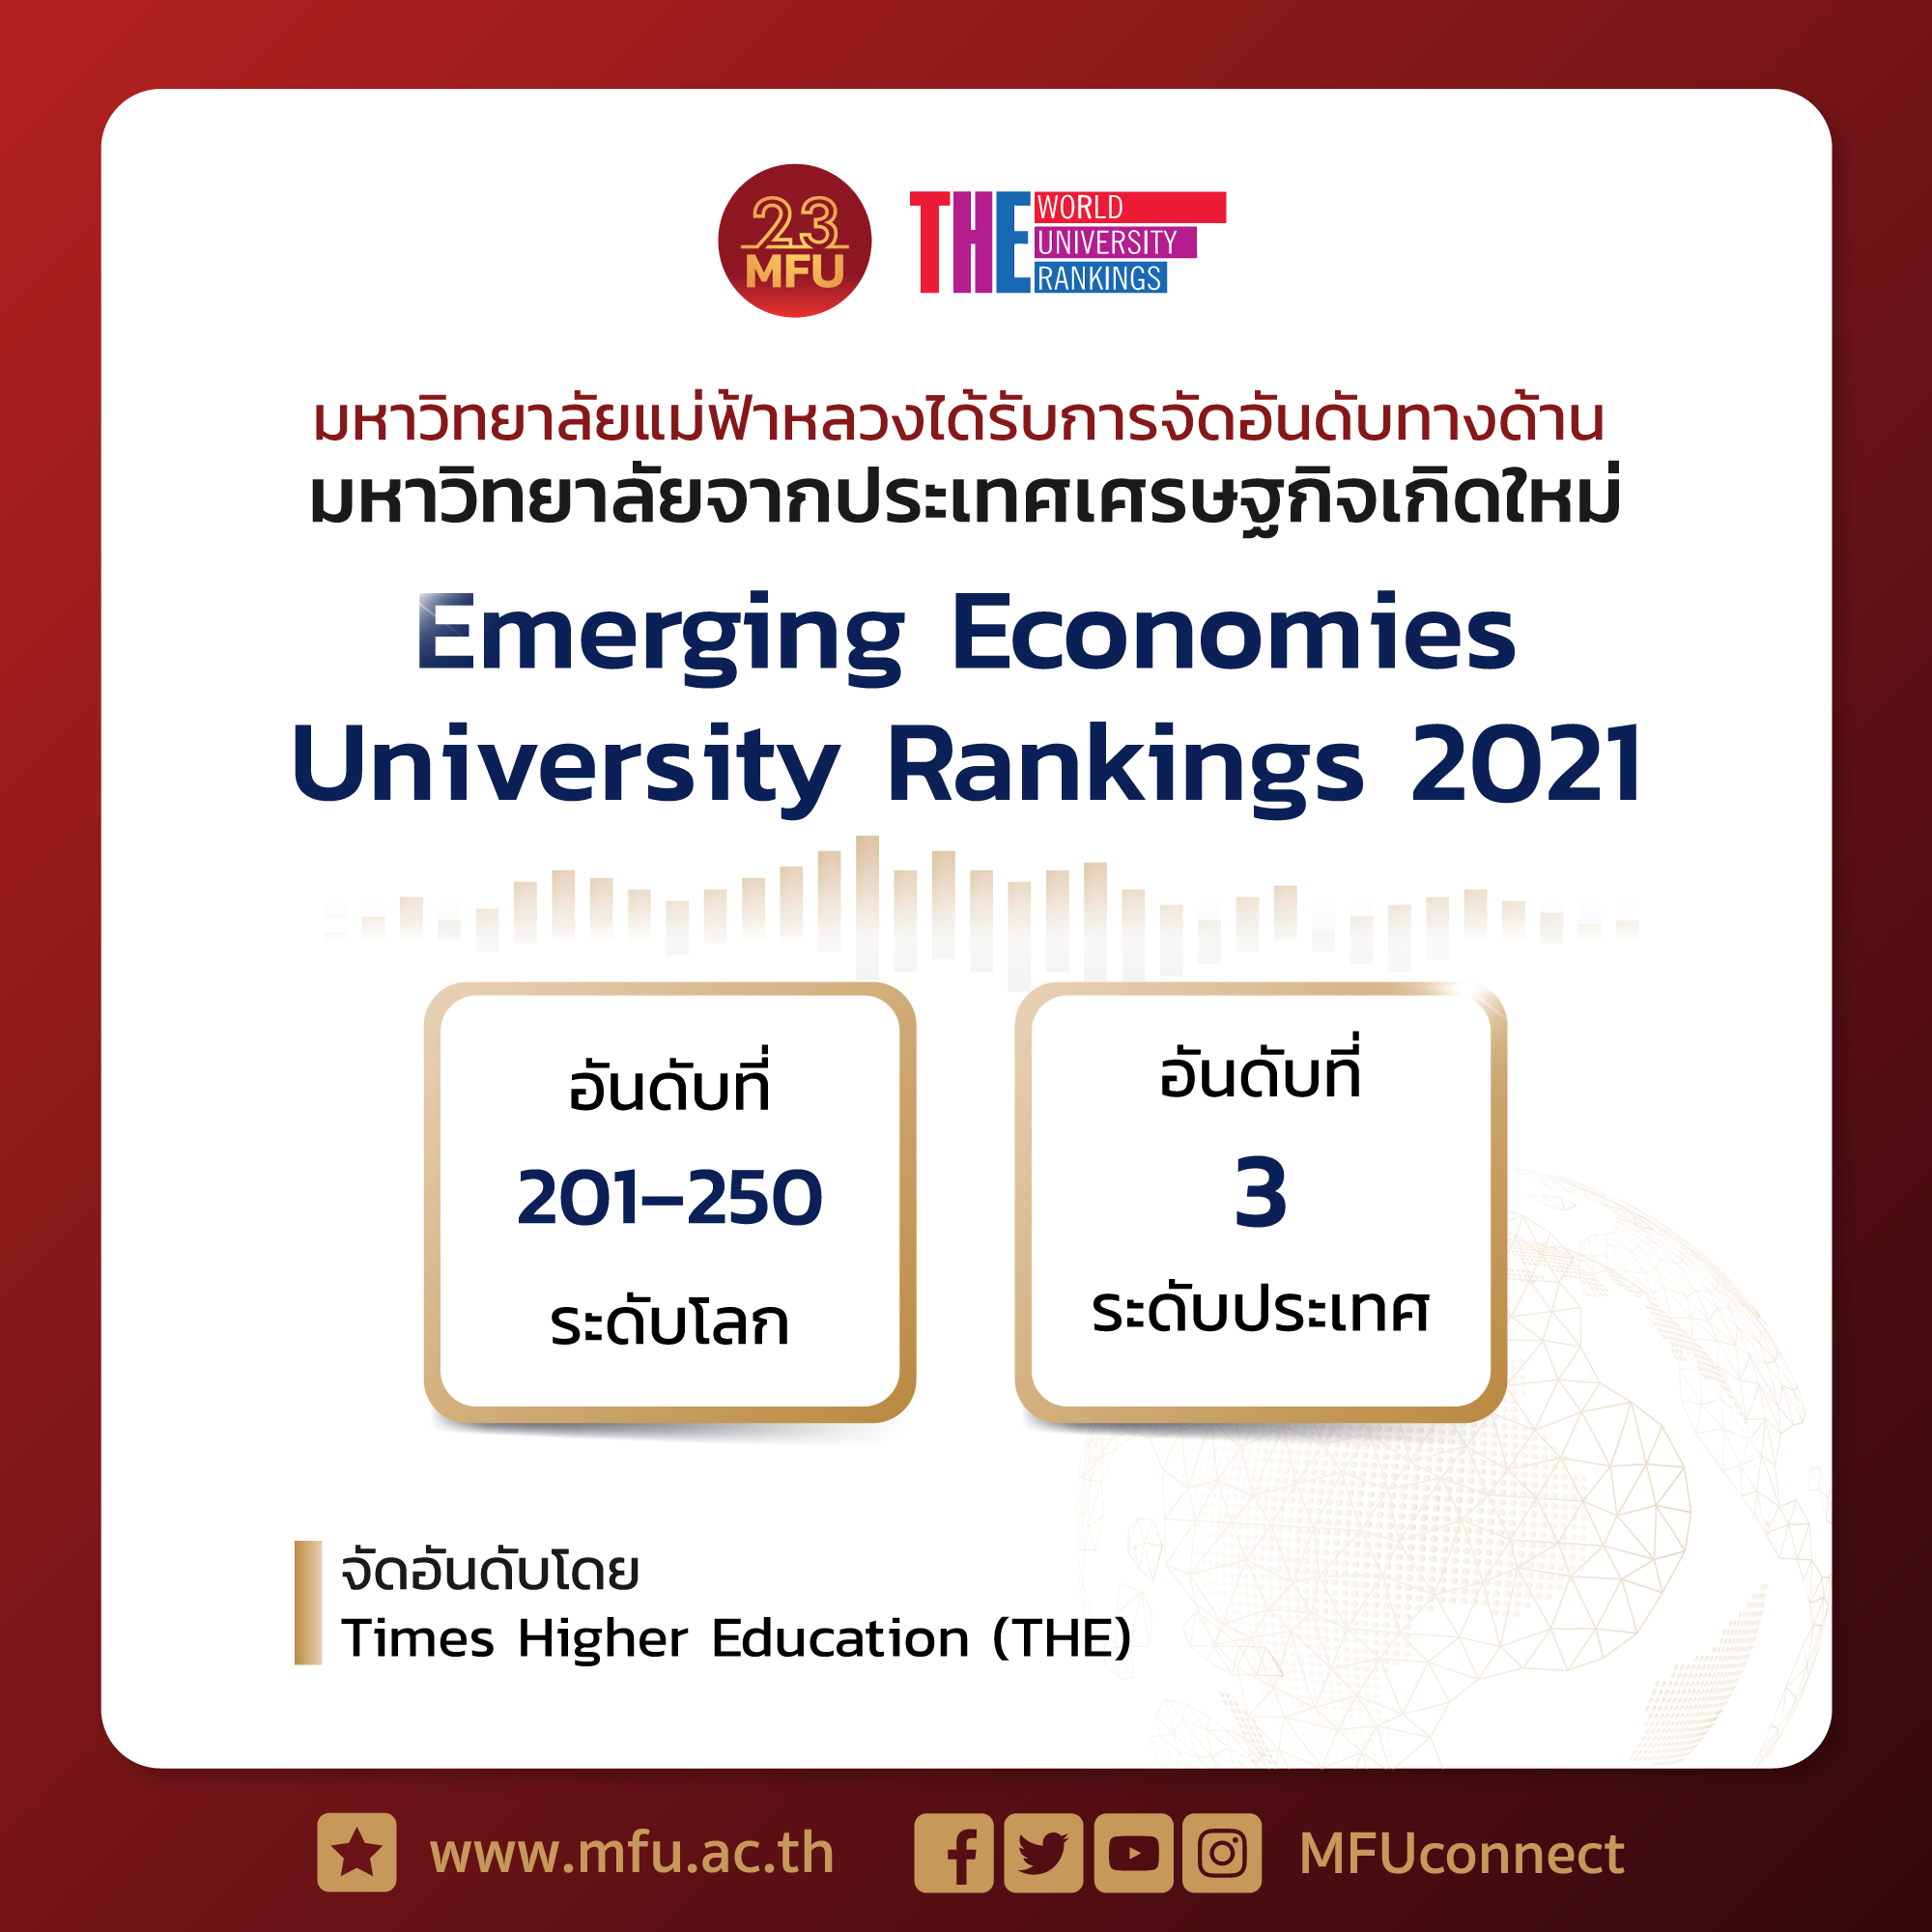 มฟล. ได้รับการจัดอันดับของ THE: Emerging Economics University Ranking 2021 อยู่ในกลุ่ม 201-250 และเป็นอันดับที่ 3 ของไทย